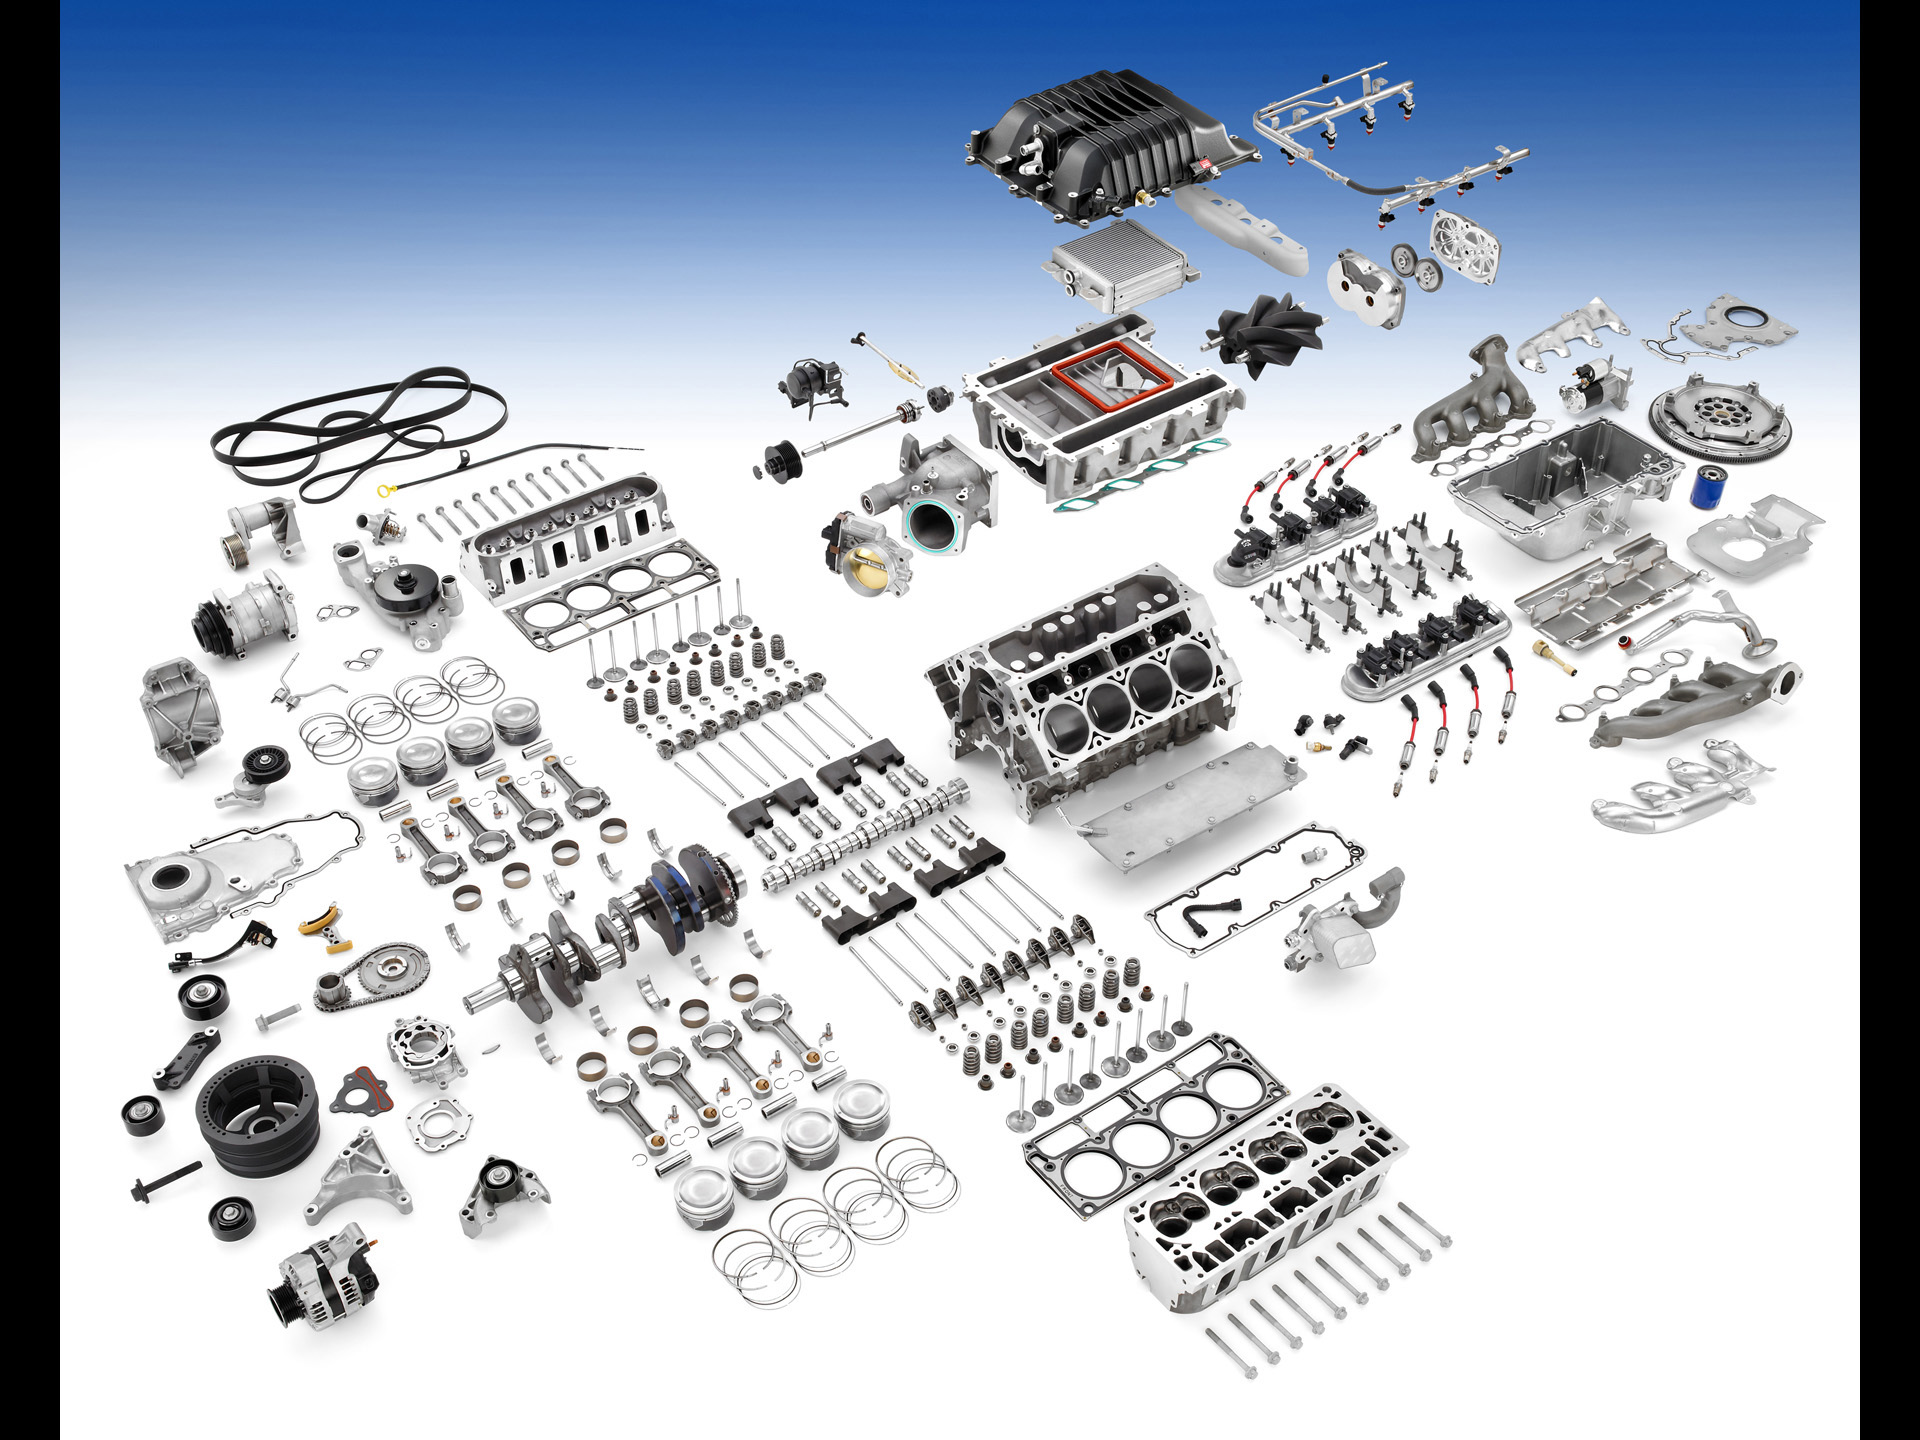 2012-chevrolet-camaro-zl1-engine-parts-1920x1440.jpg